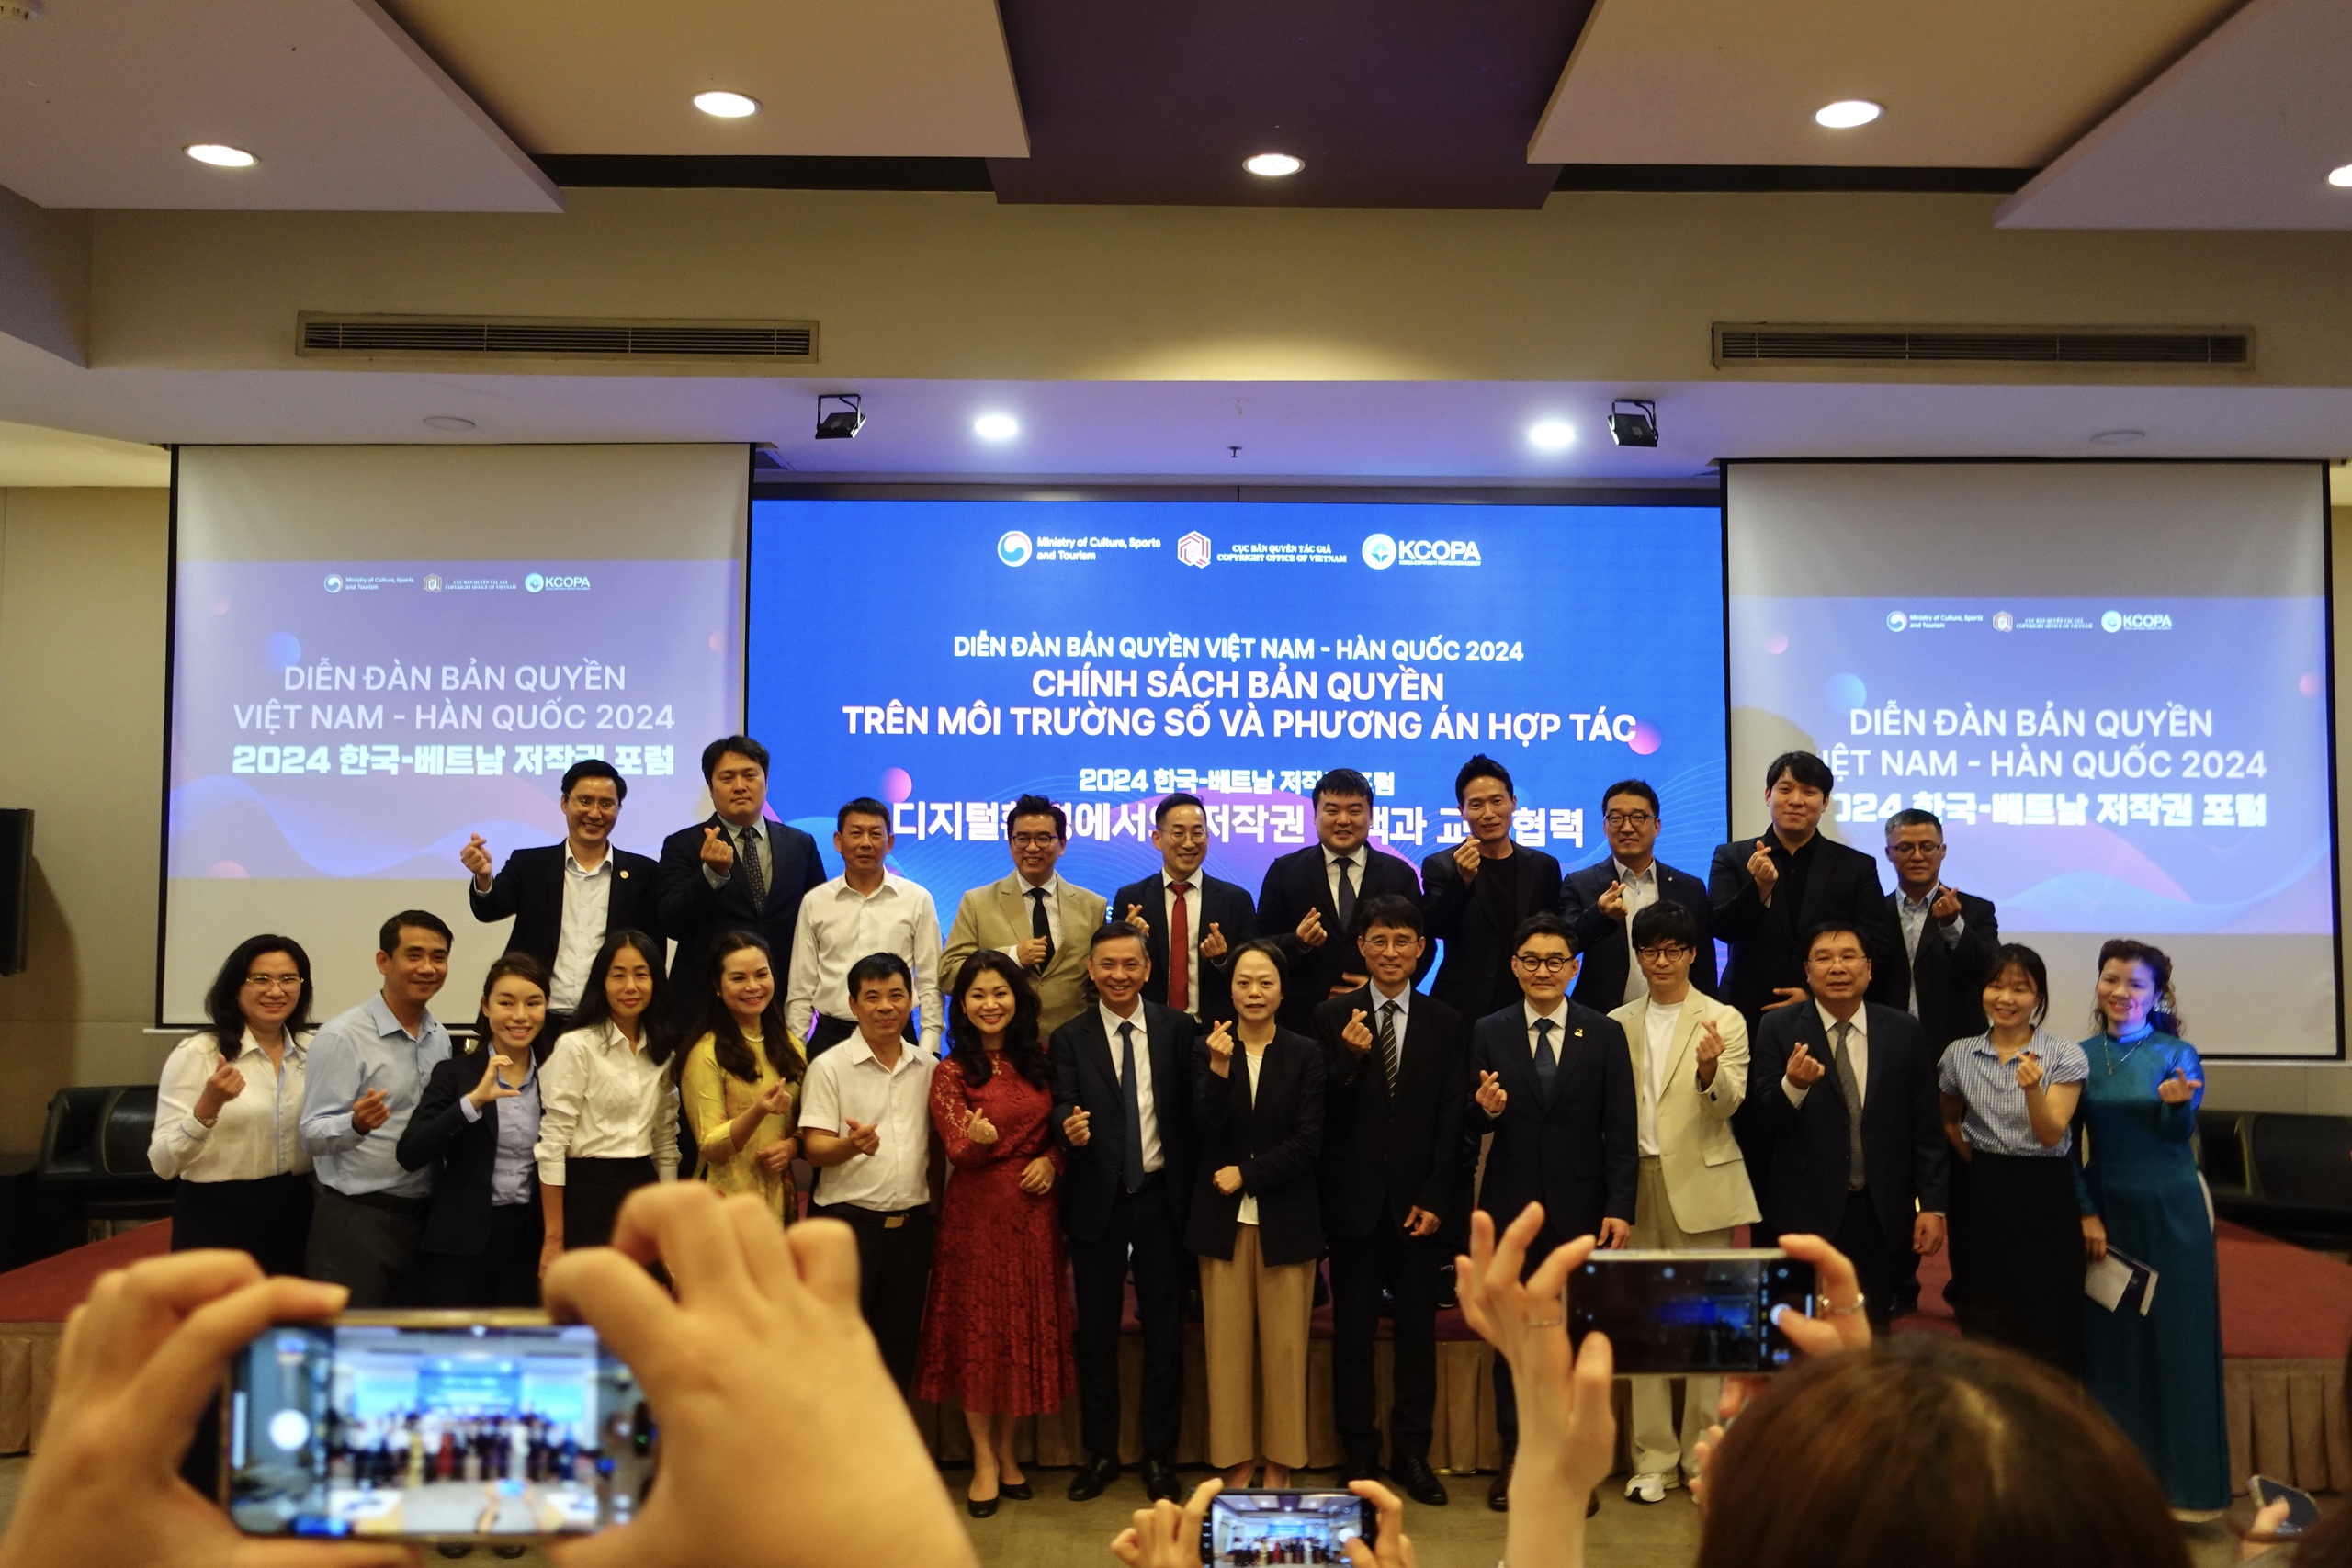 Việt Nam và Hàn Quốc hợp tác bảo vệ bản quyền tác giả trên môi trường số- Ảnh 1.